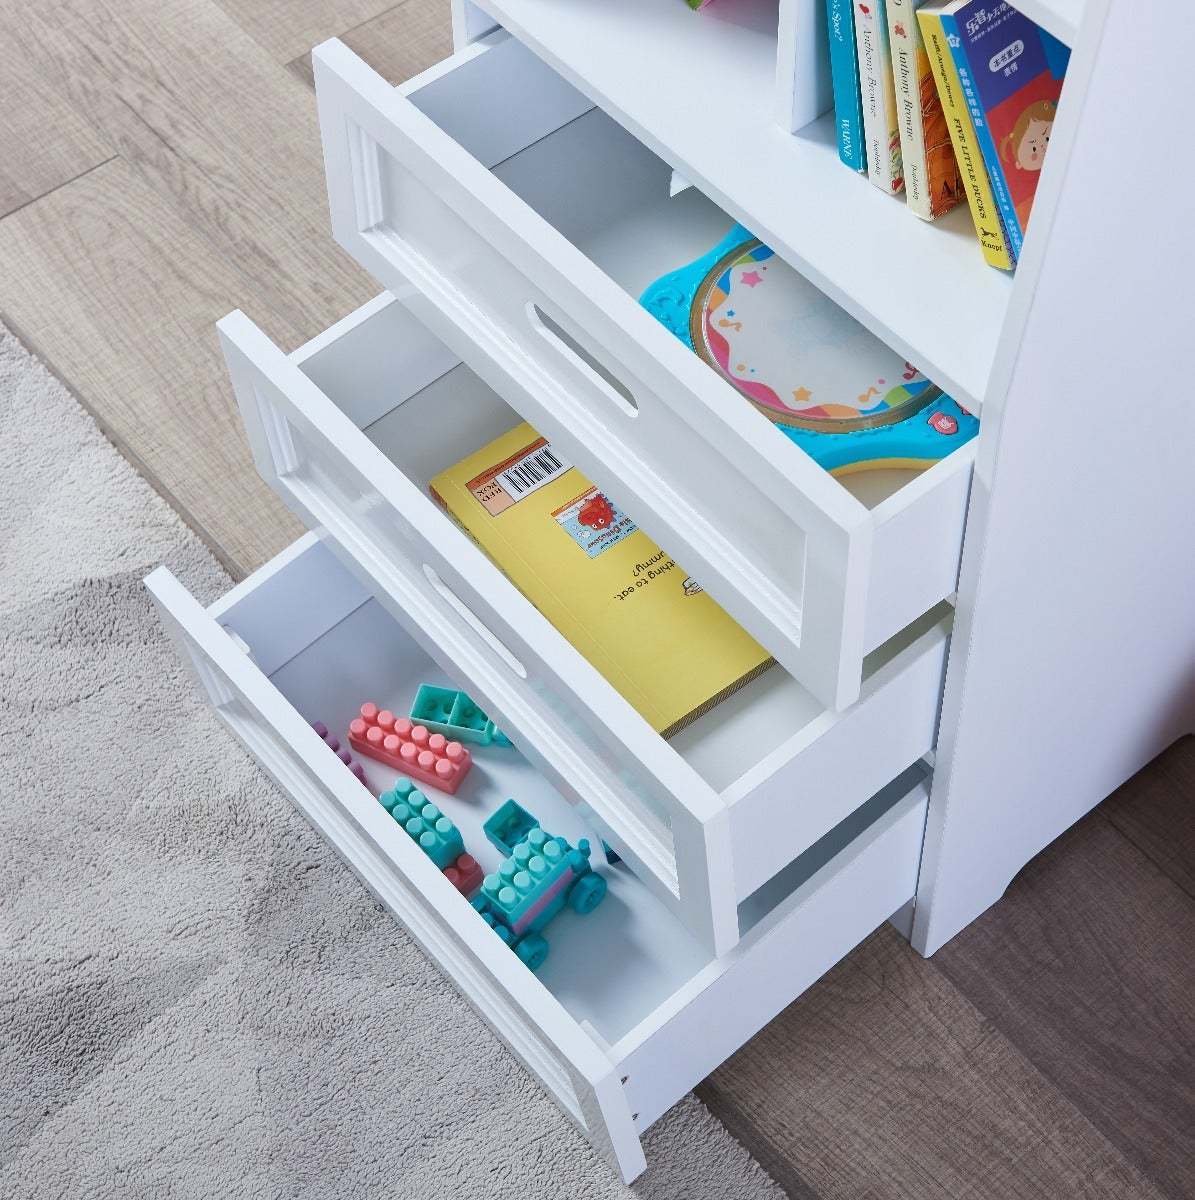 5 Shelf Book Display for Preschoolers